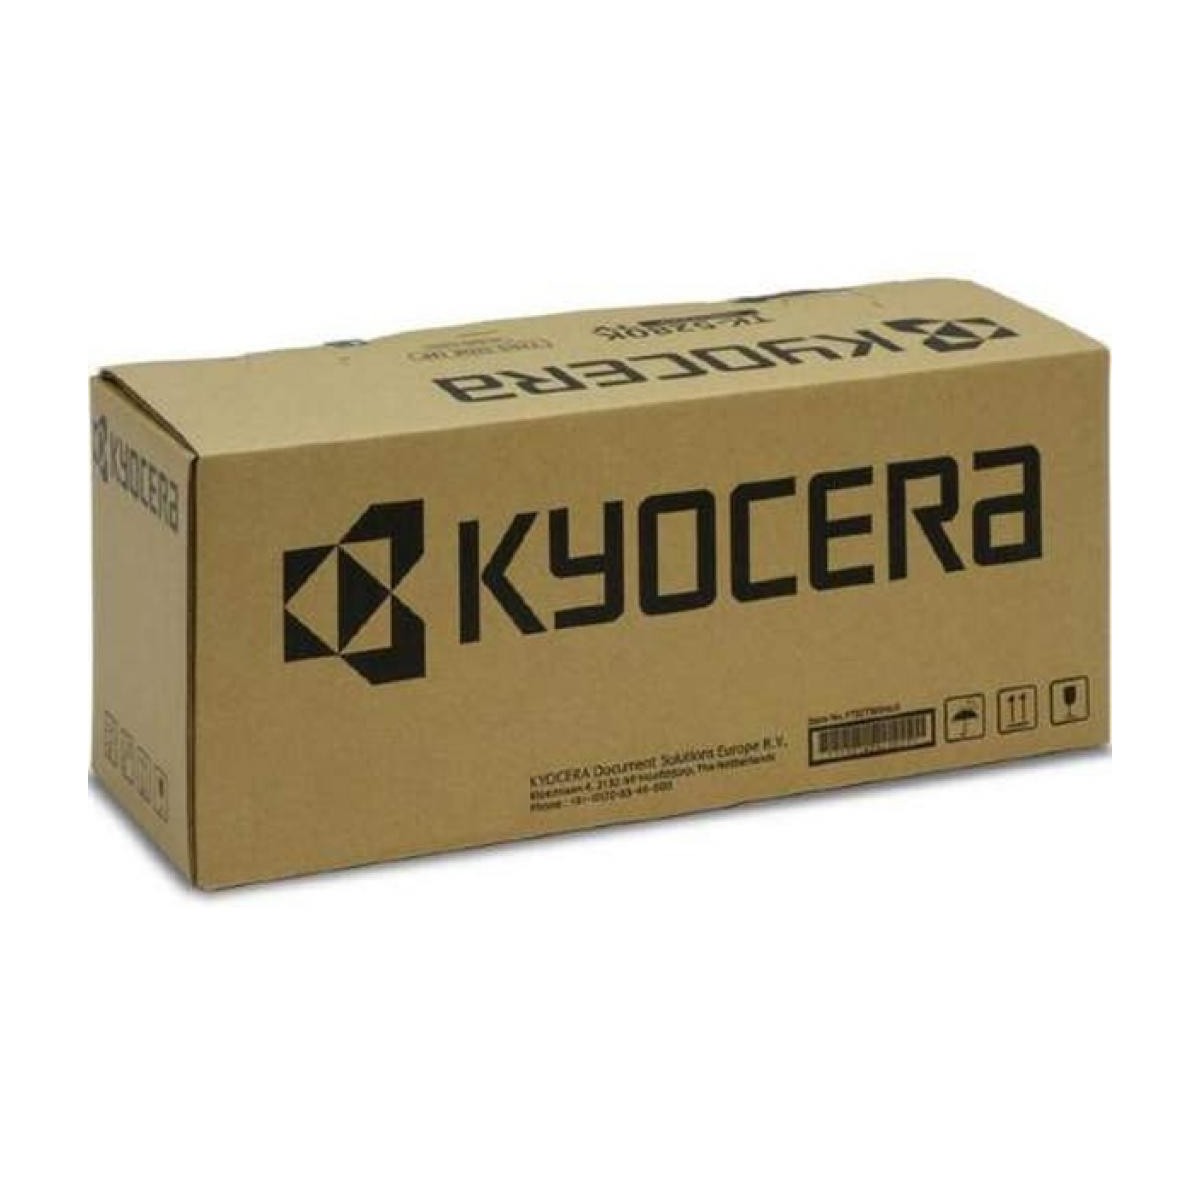 Kyocera FK-320 - FS-3900D/4000D